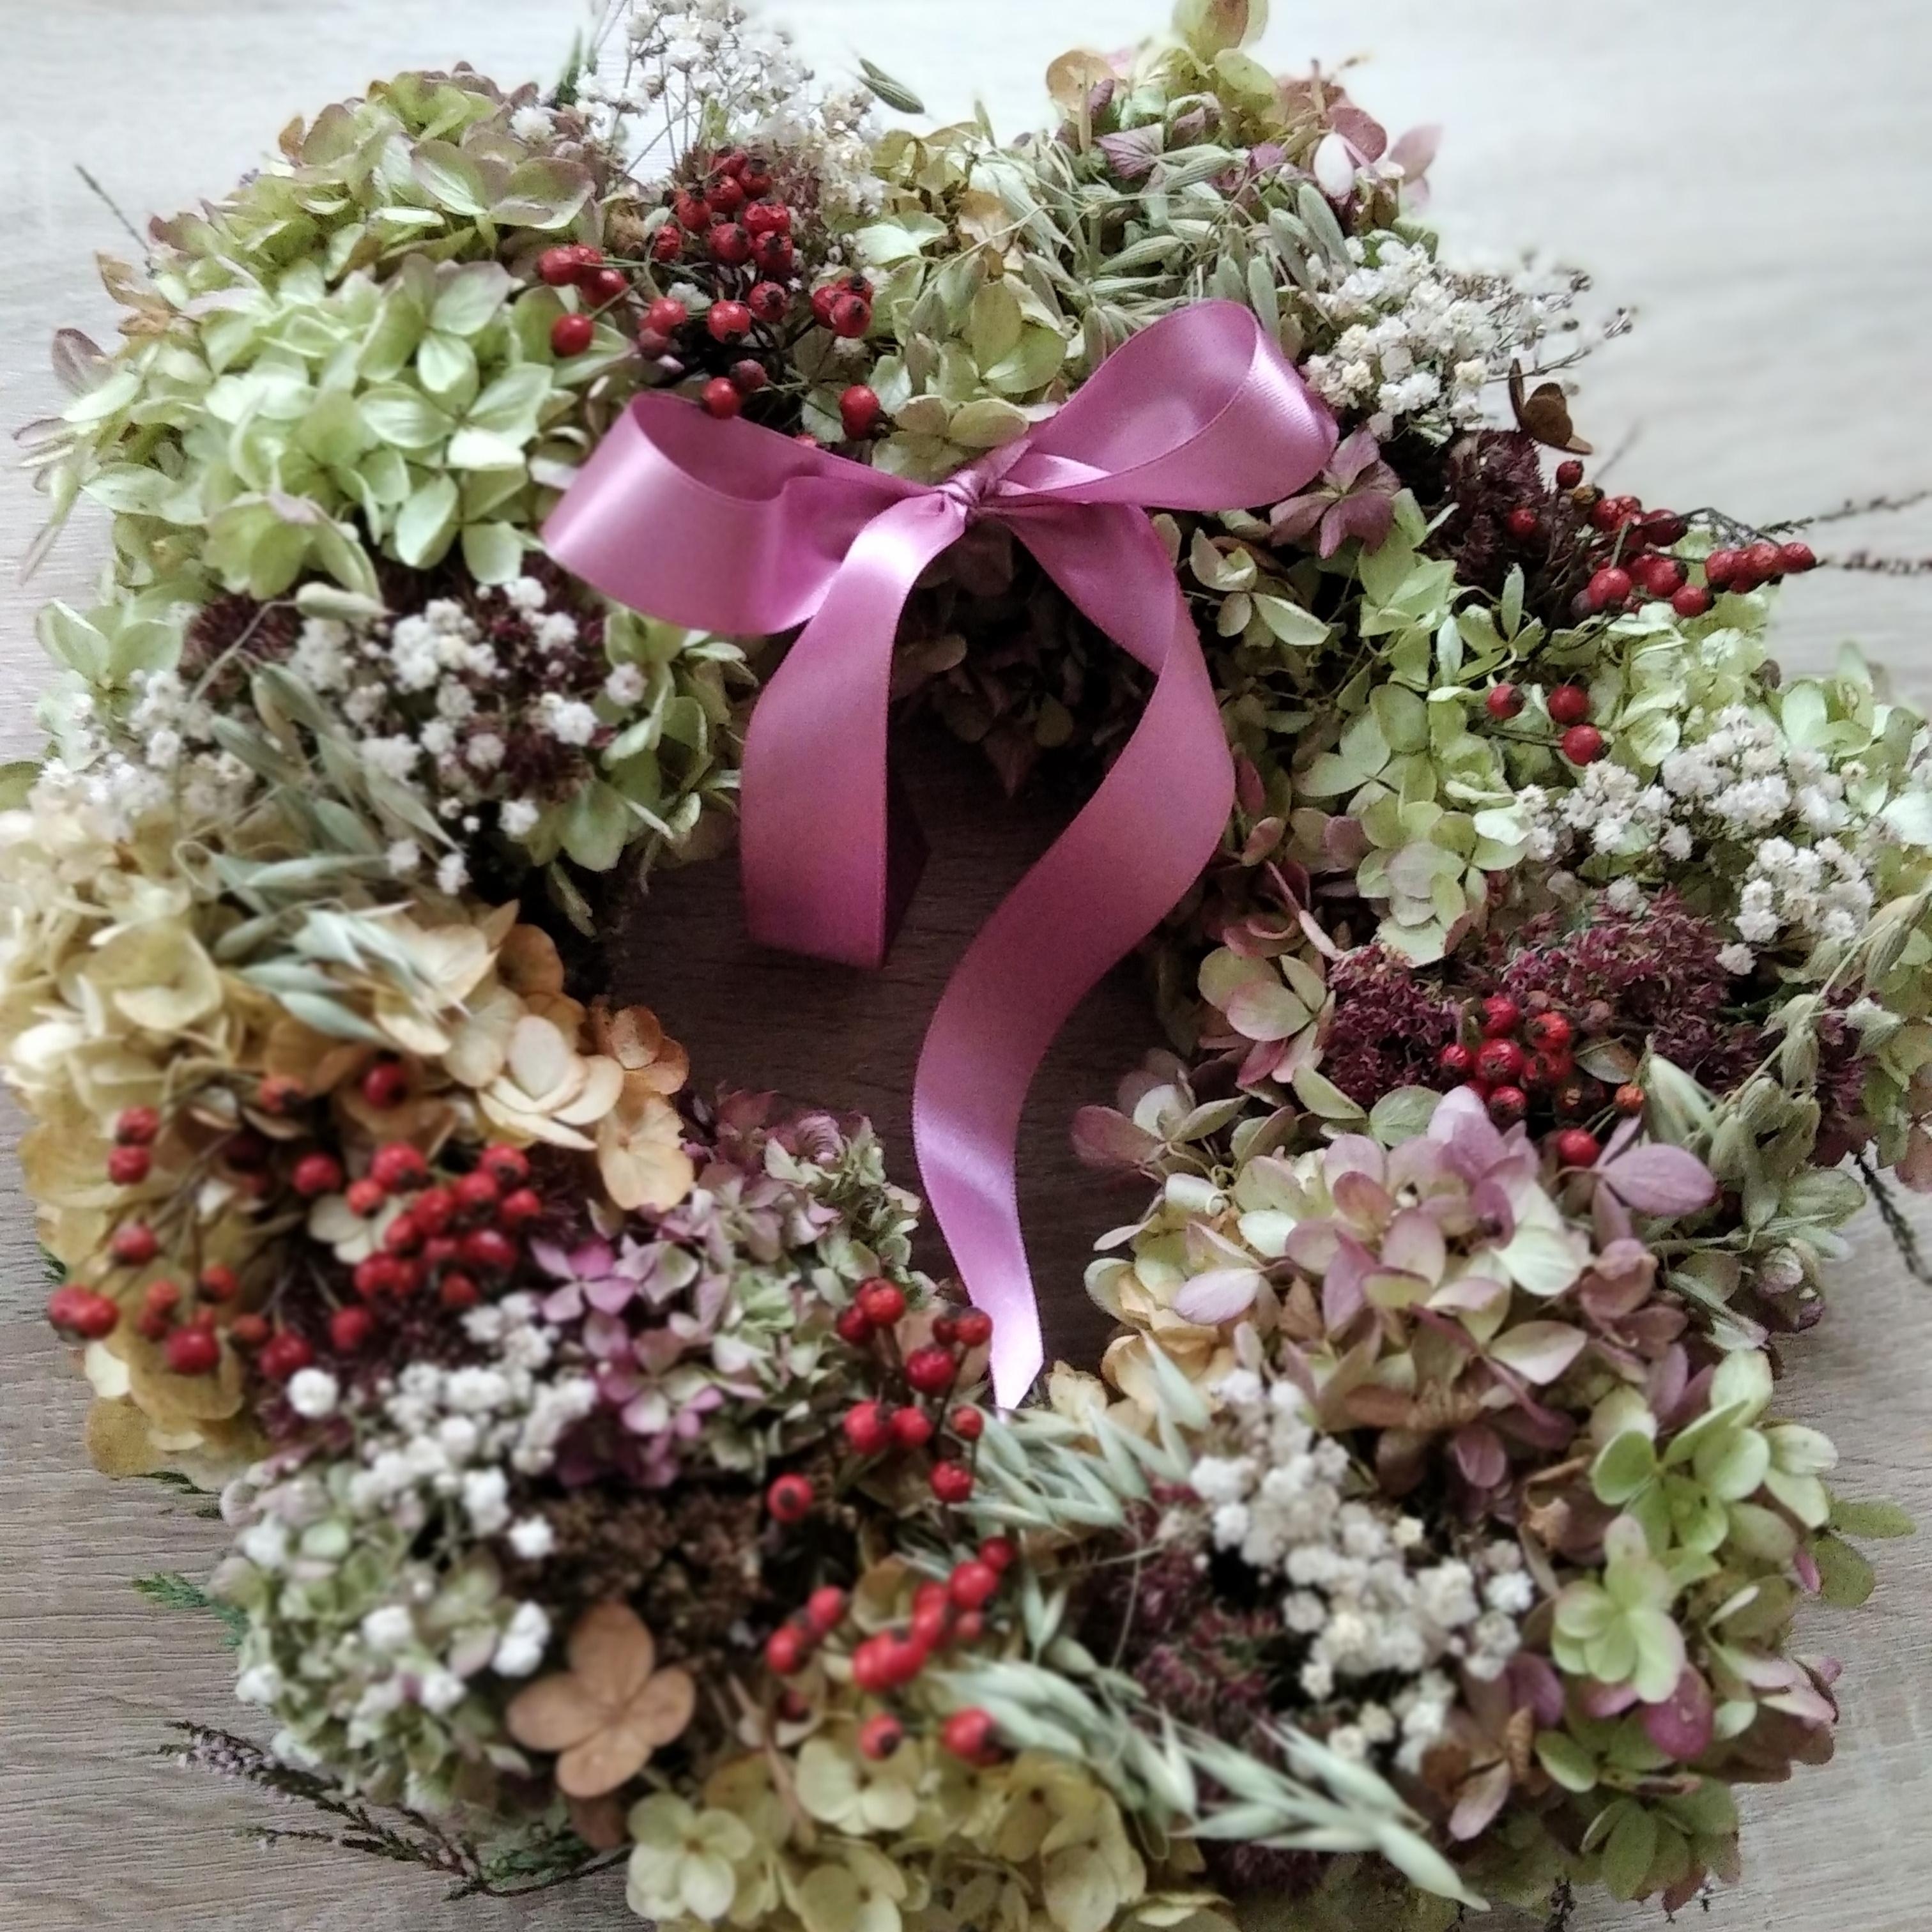 #Kranzliebe im Herbst #Hortensien
Wie jedes Jahr wieder die wunderschönen Hortensienblüten geerntet und verarbeitet 🥰